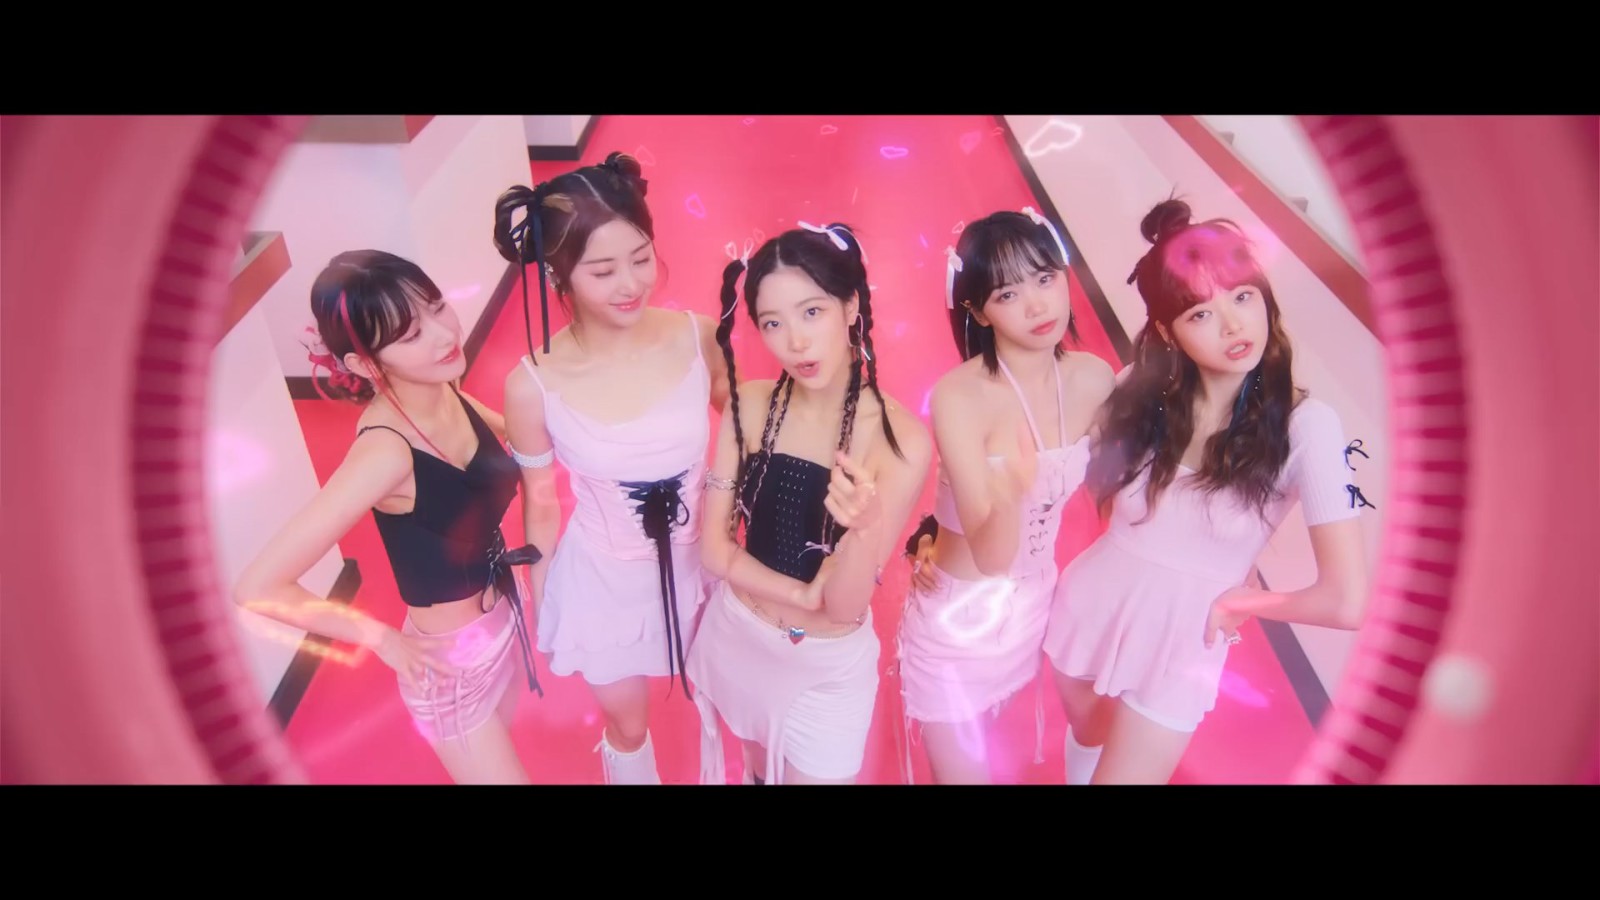 《守望先锋2》联动LE SSERAFIM女团单曲MV宣告 新联动皮肤即将上线